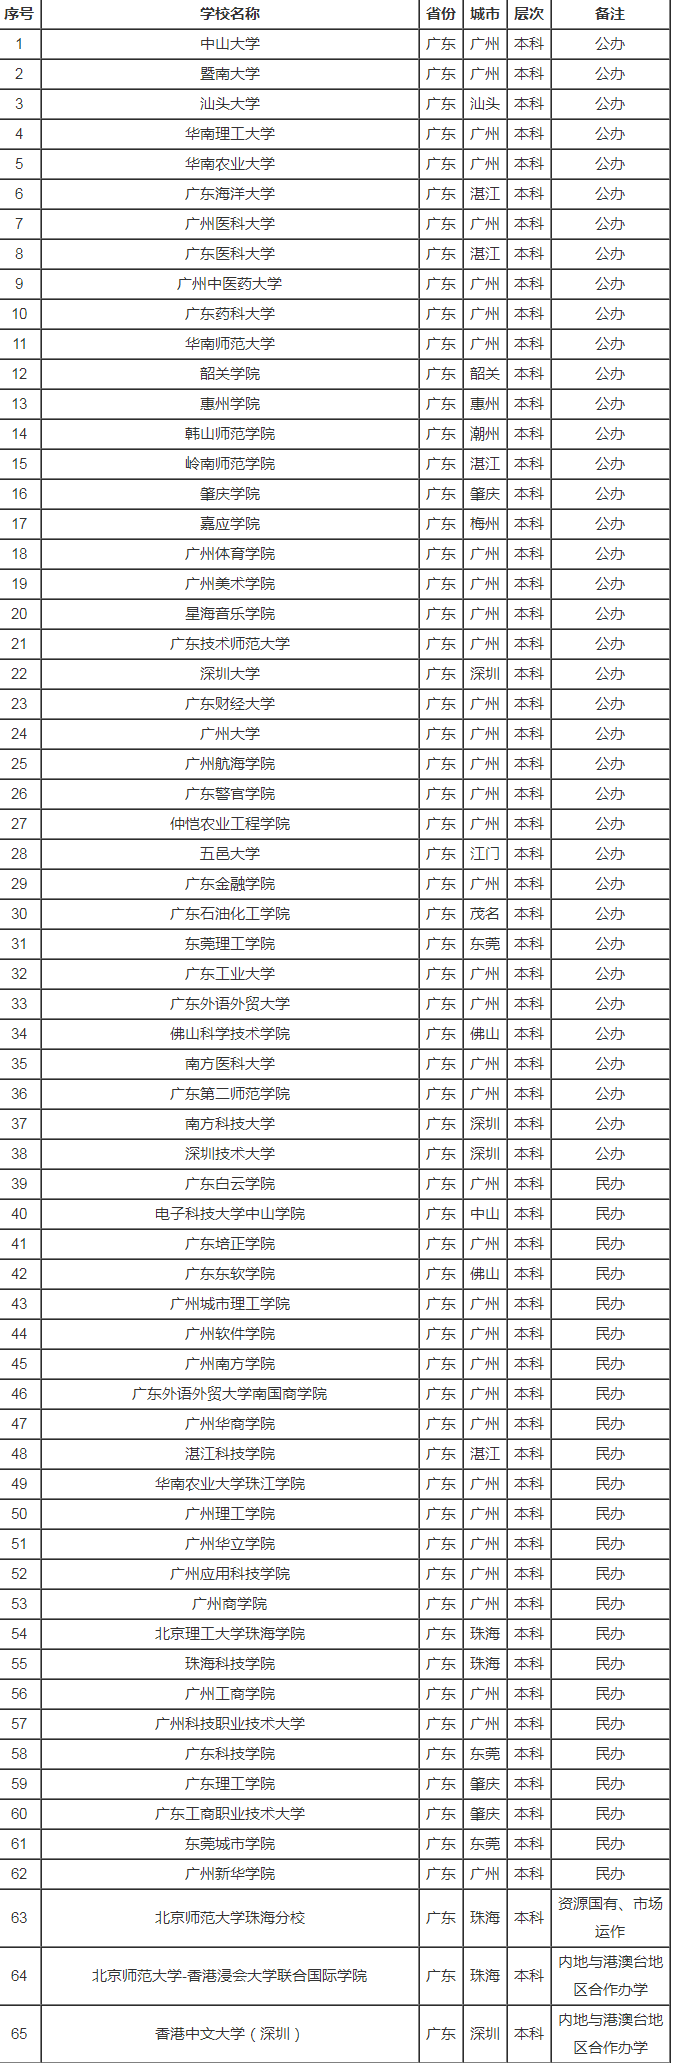 广东省高校名单一览表(最全版)